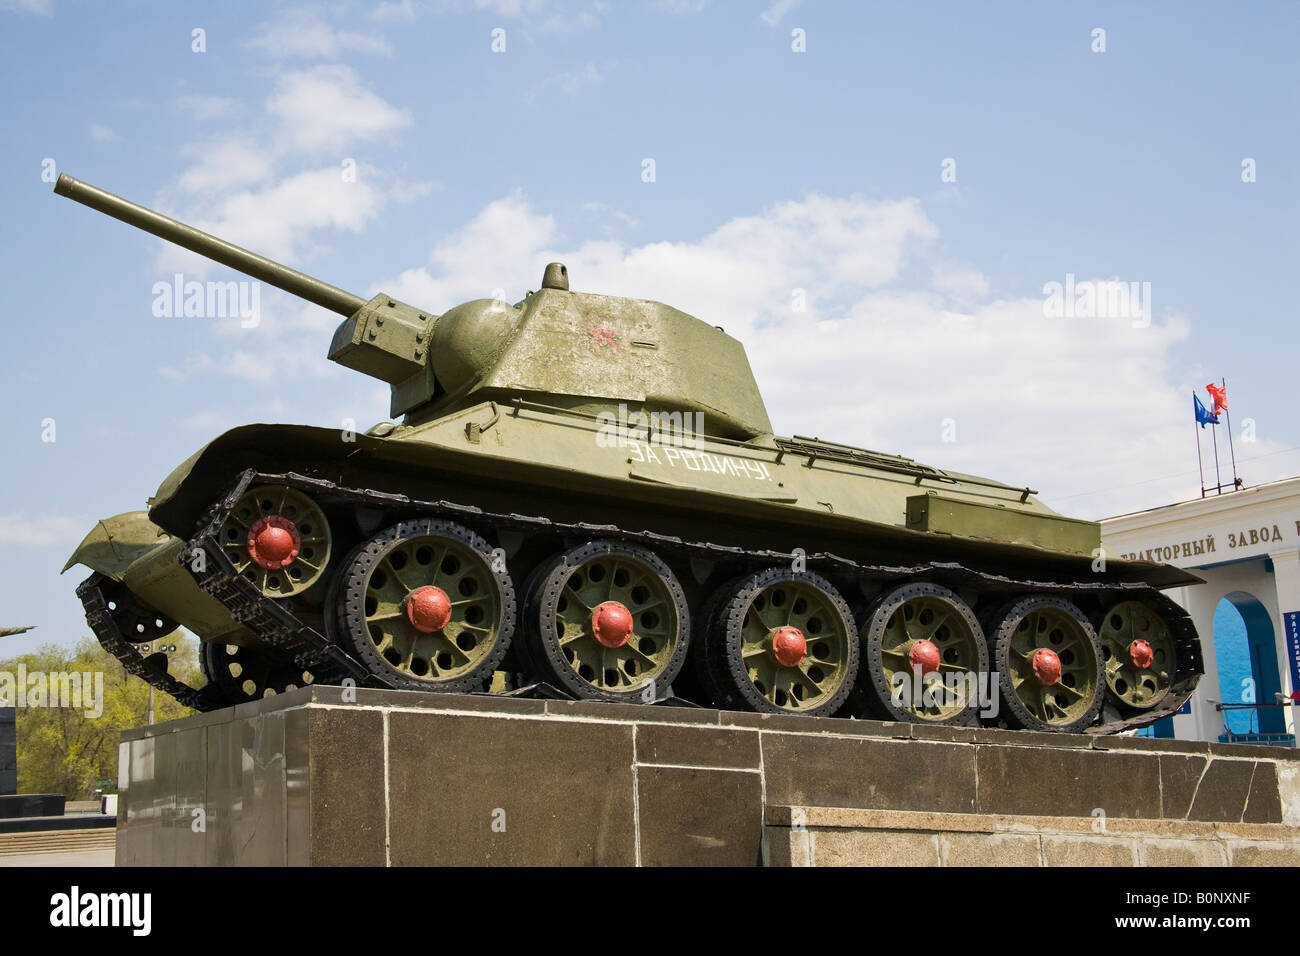 Réservoir T-34 soviétique, en face de l'usine de tracteurs de Dzerjinsky, Volgograd (ex-Stalingrad), Russie, Fédération de Russie Banque D'Images